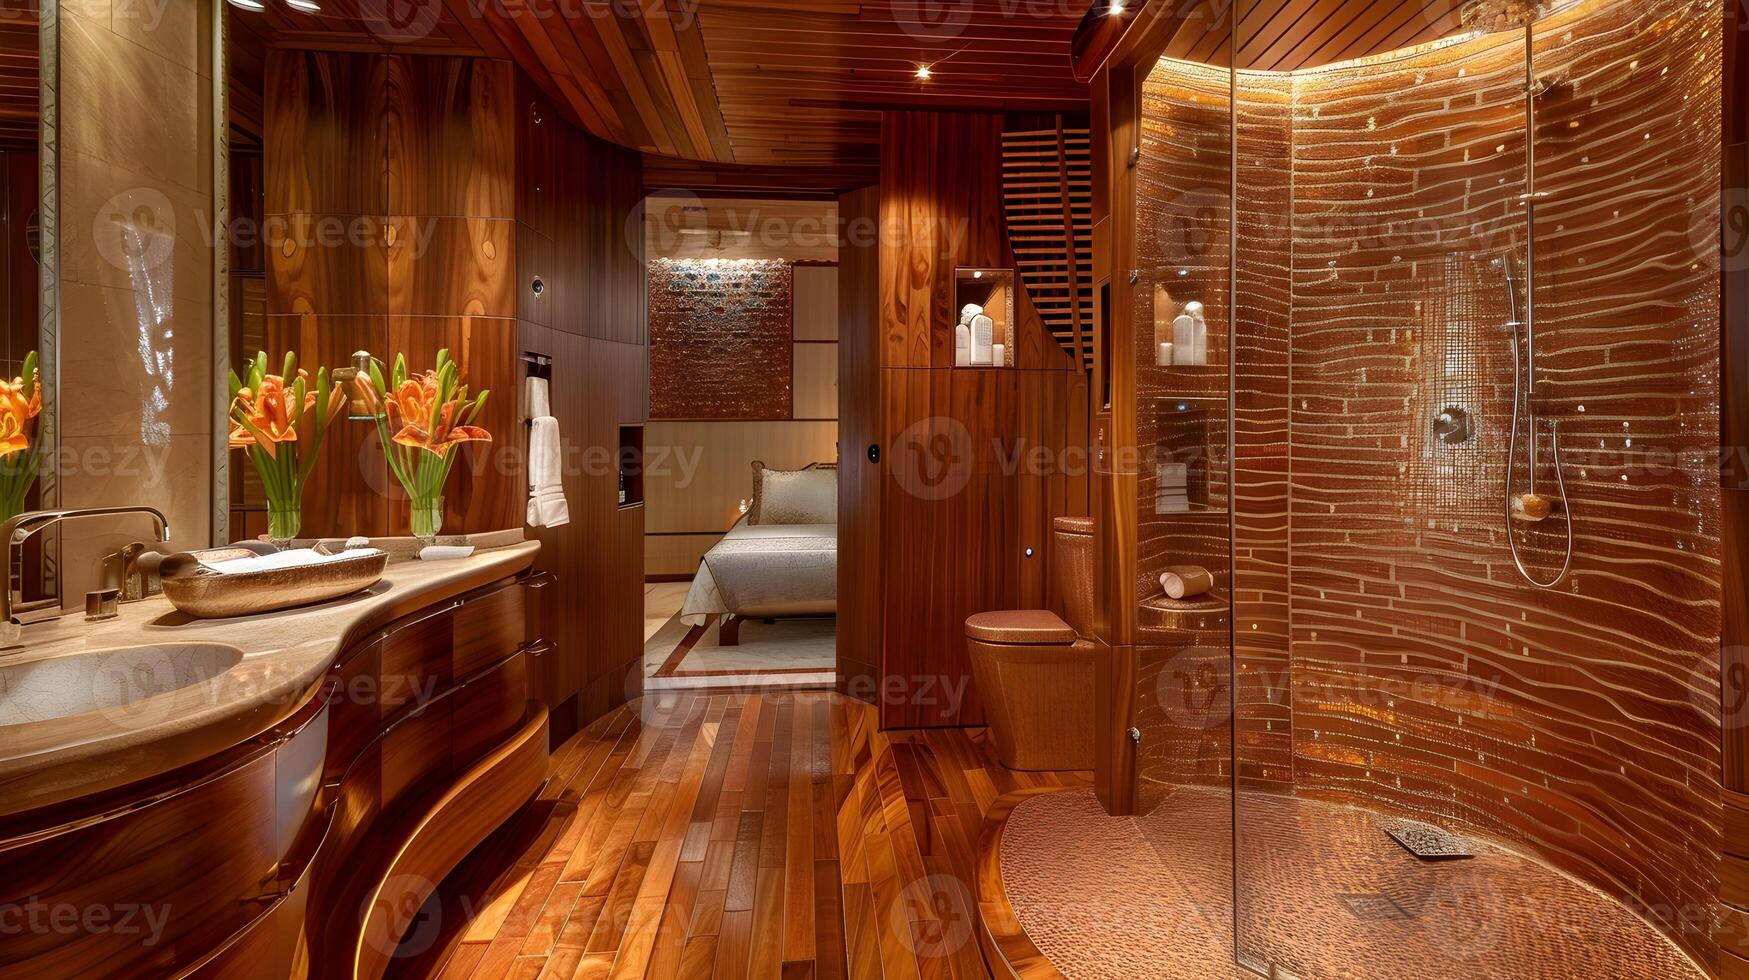 madera de zebrano opulencia - un calentar y texturizado baño santuario con resumen mosaico embaldosado ducha foto